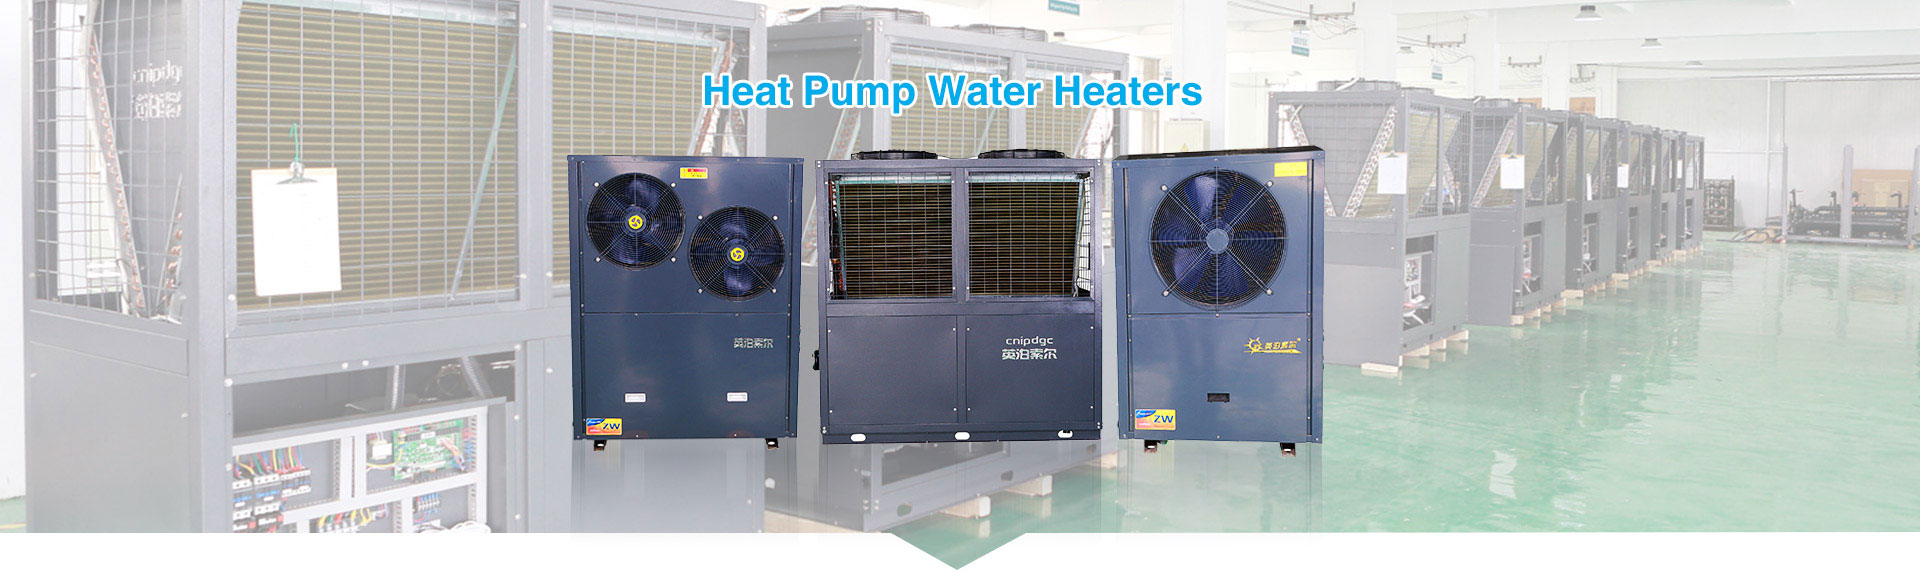 Hear Pump Water Heaters